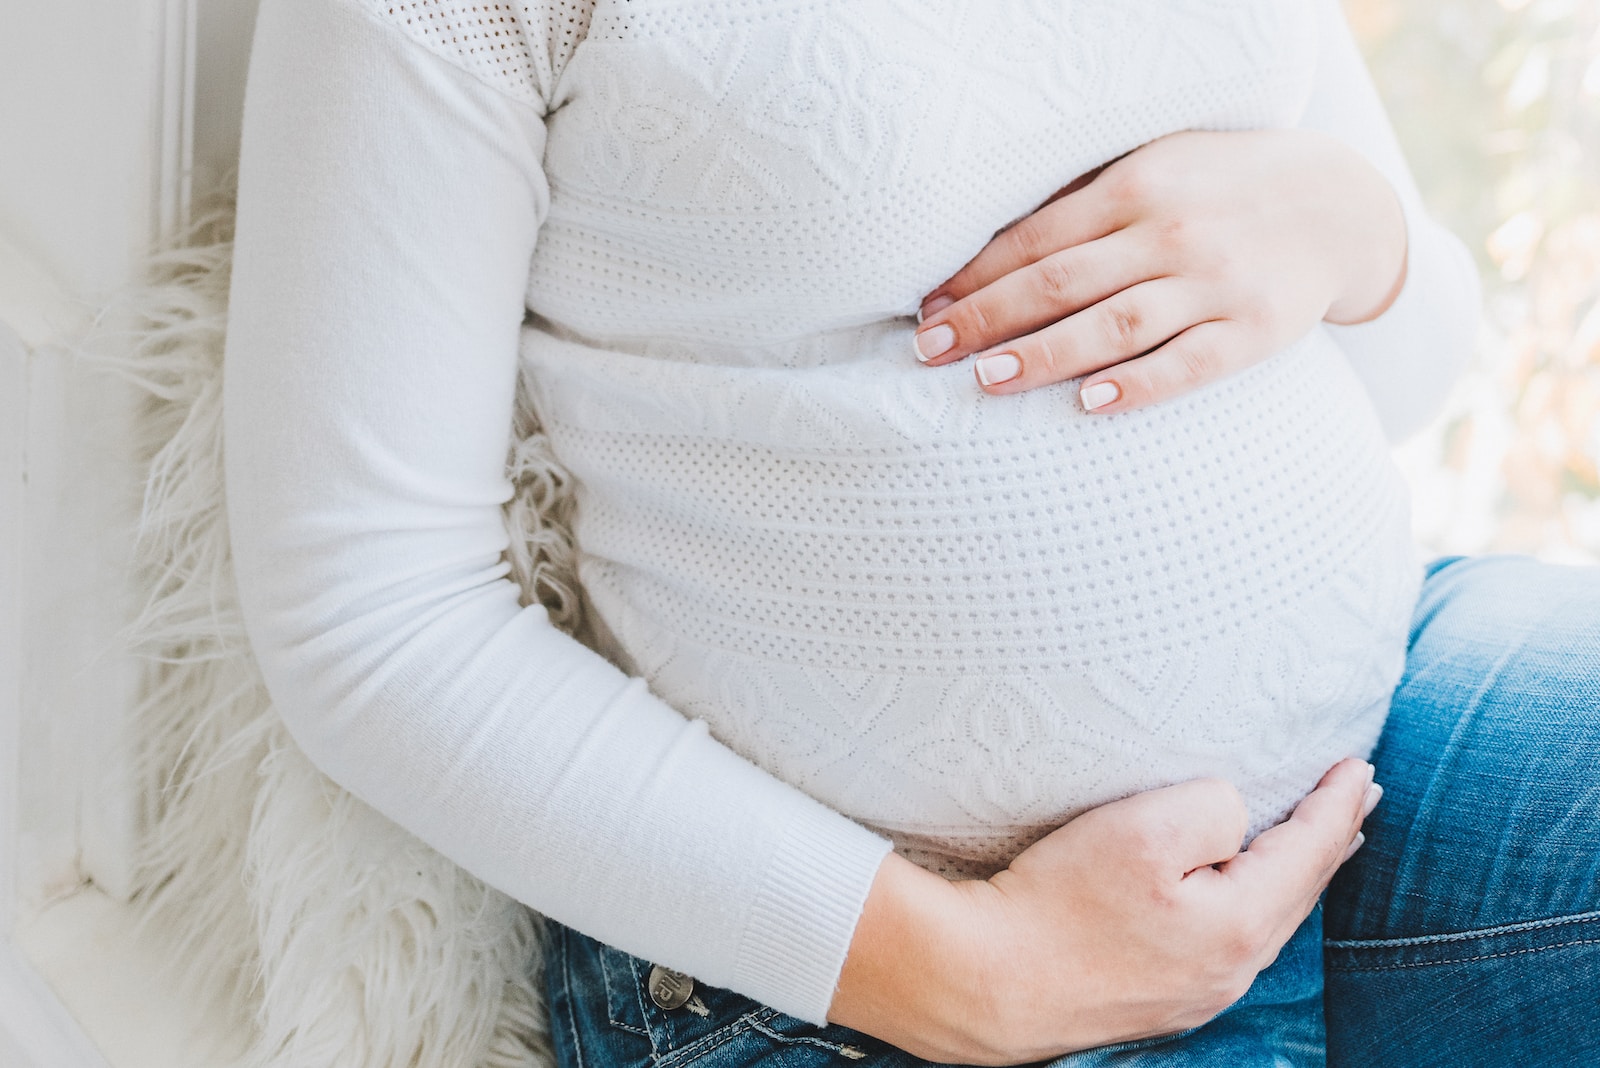 Comment prévenir les carences en fer pendant la grossesse ?